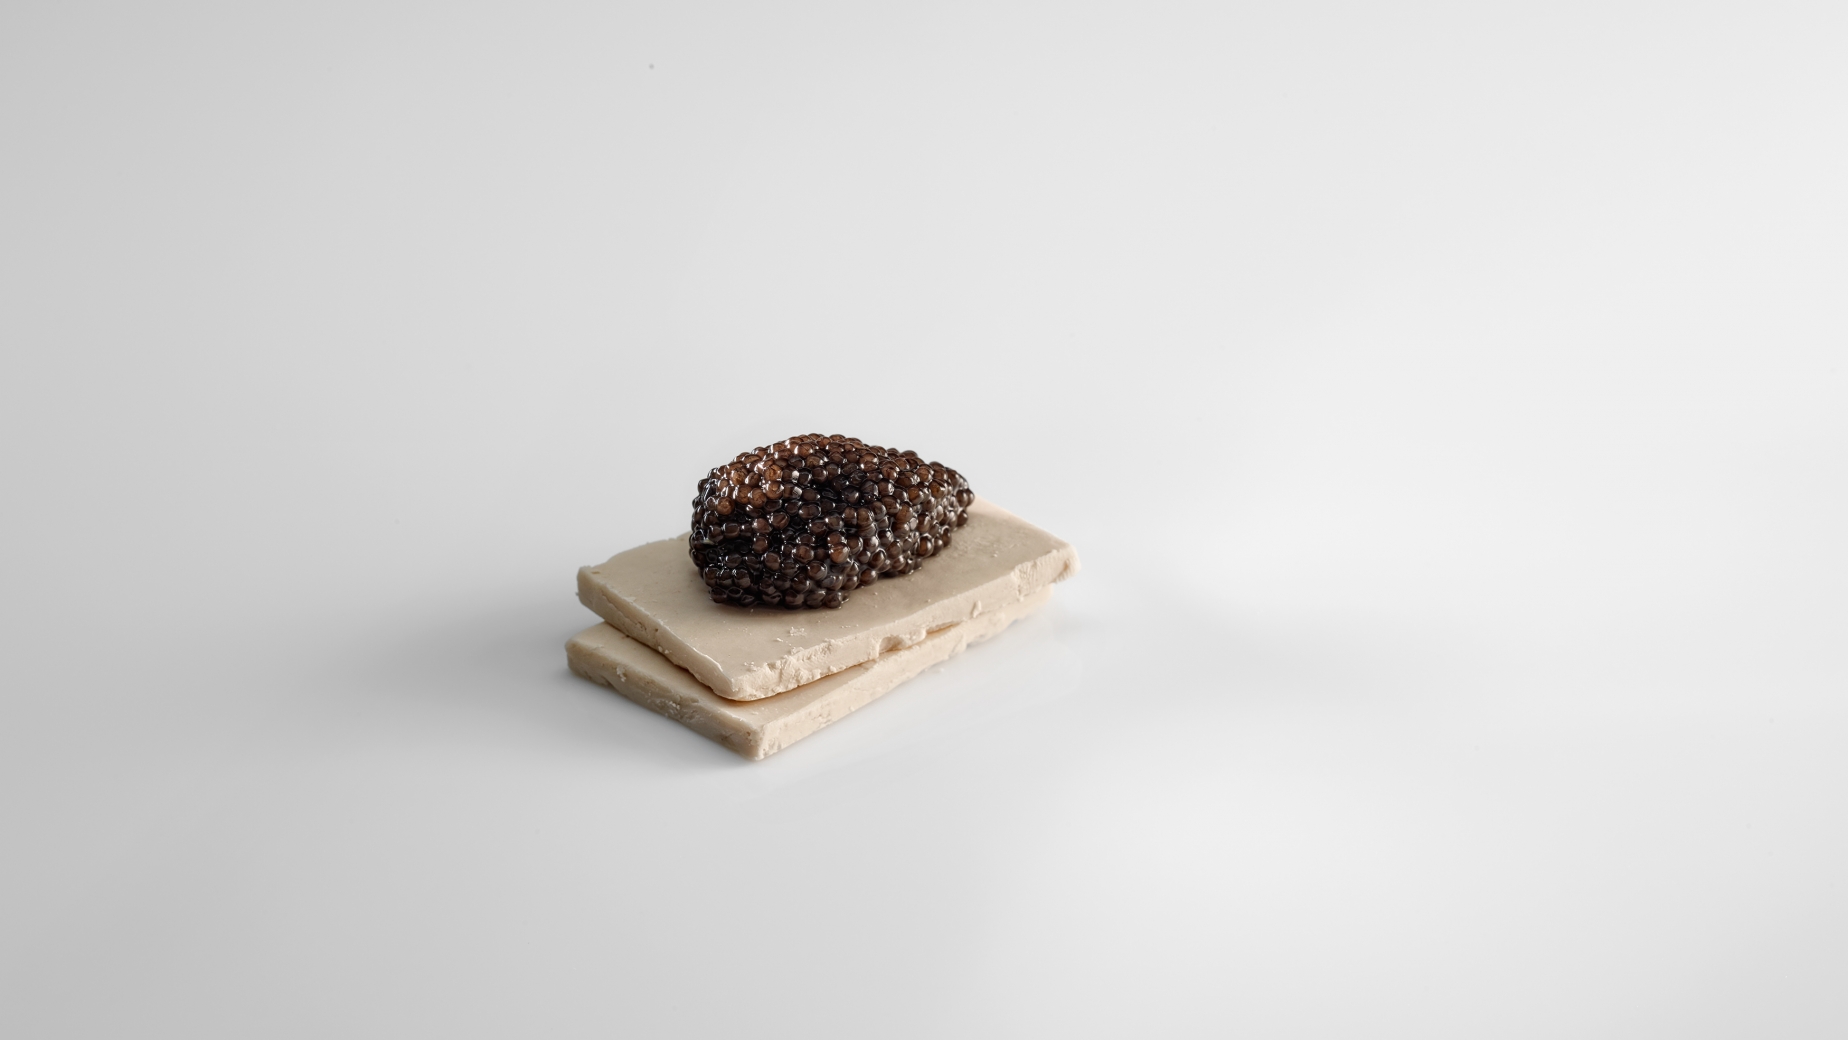 Chufa con caviar.
FOTO: José Luis López de Zubiría/ Mugaritz